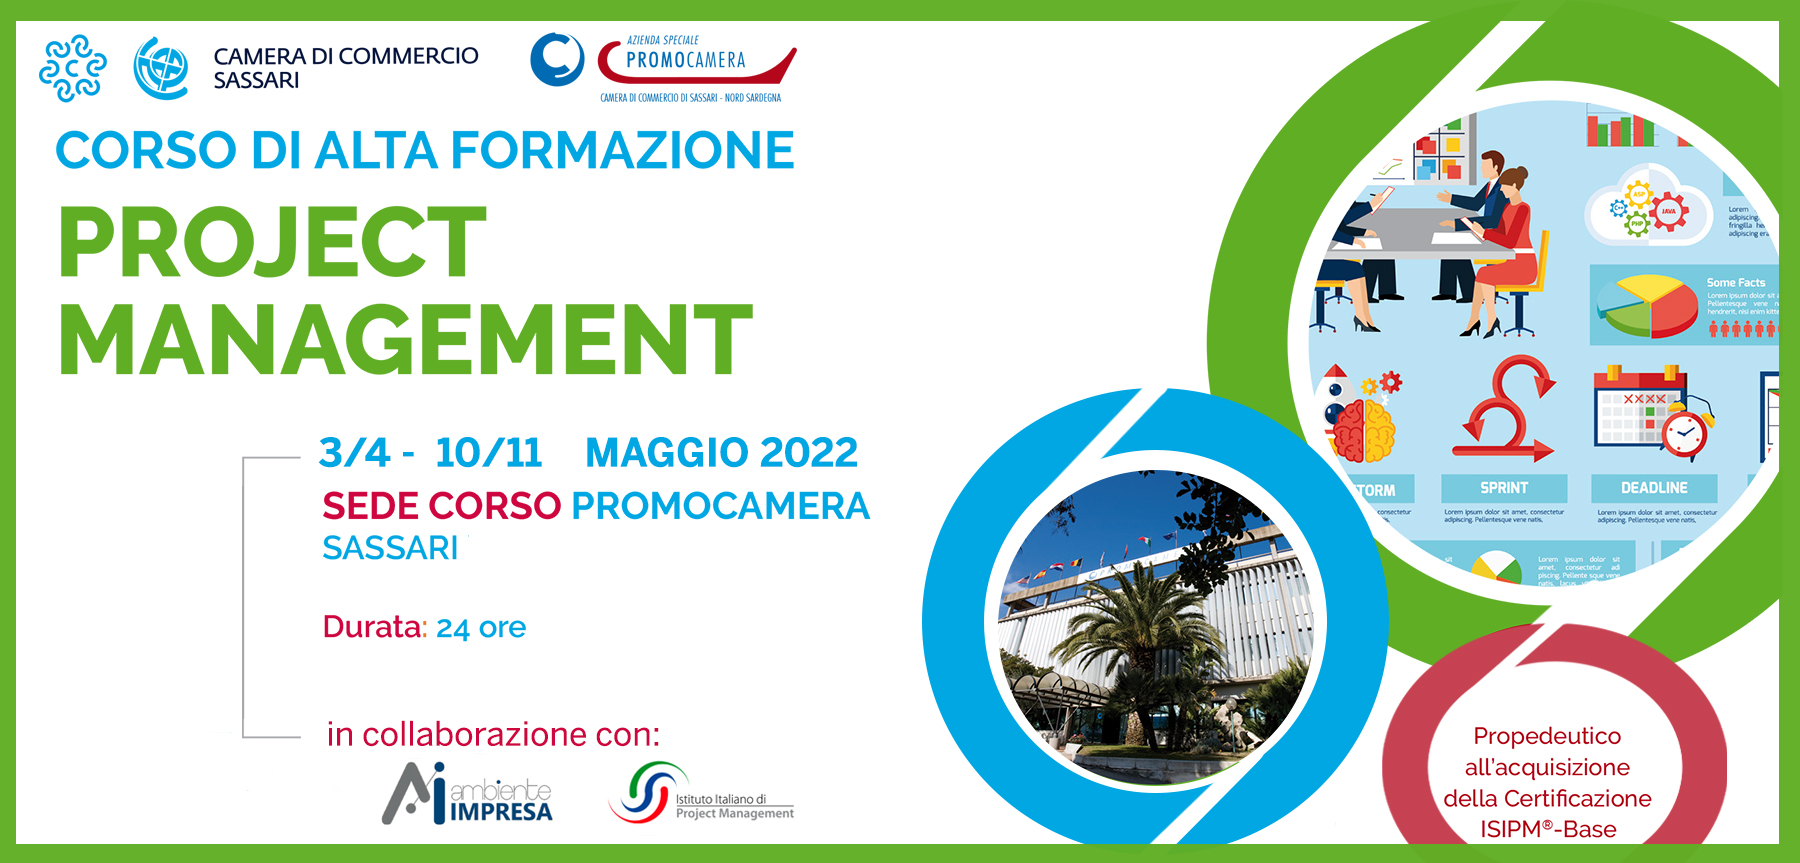 Project Magement base MAGGIO 2022 Promocamera Sassari - Ambiente Impresa srl - Cagliari"